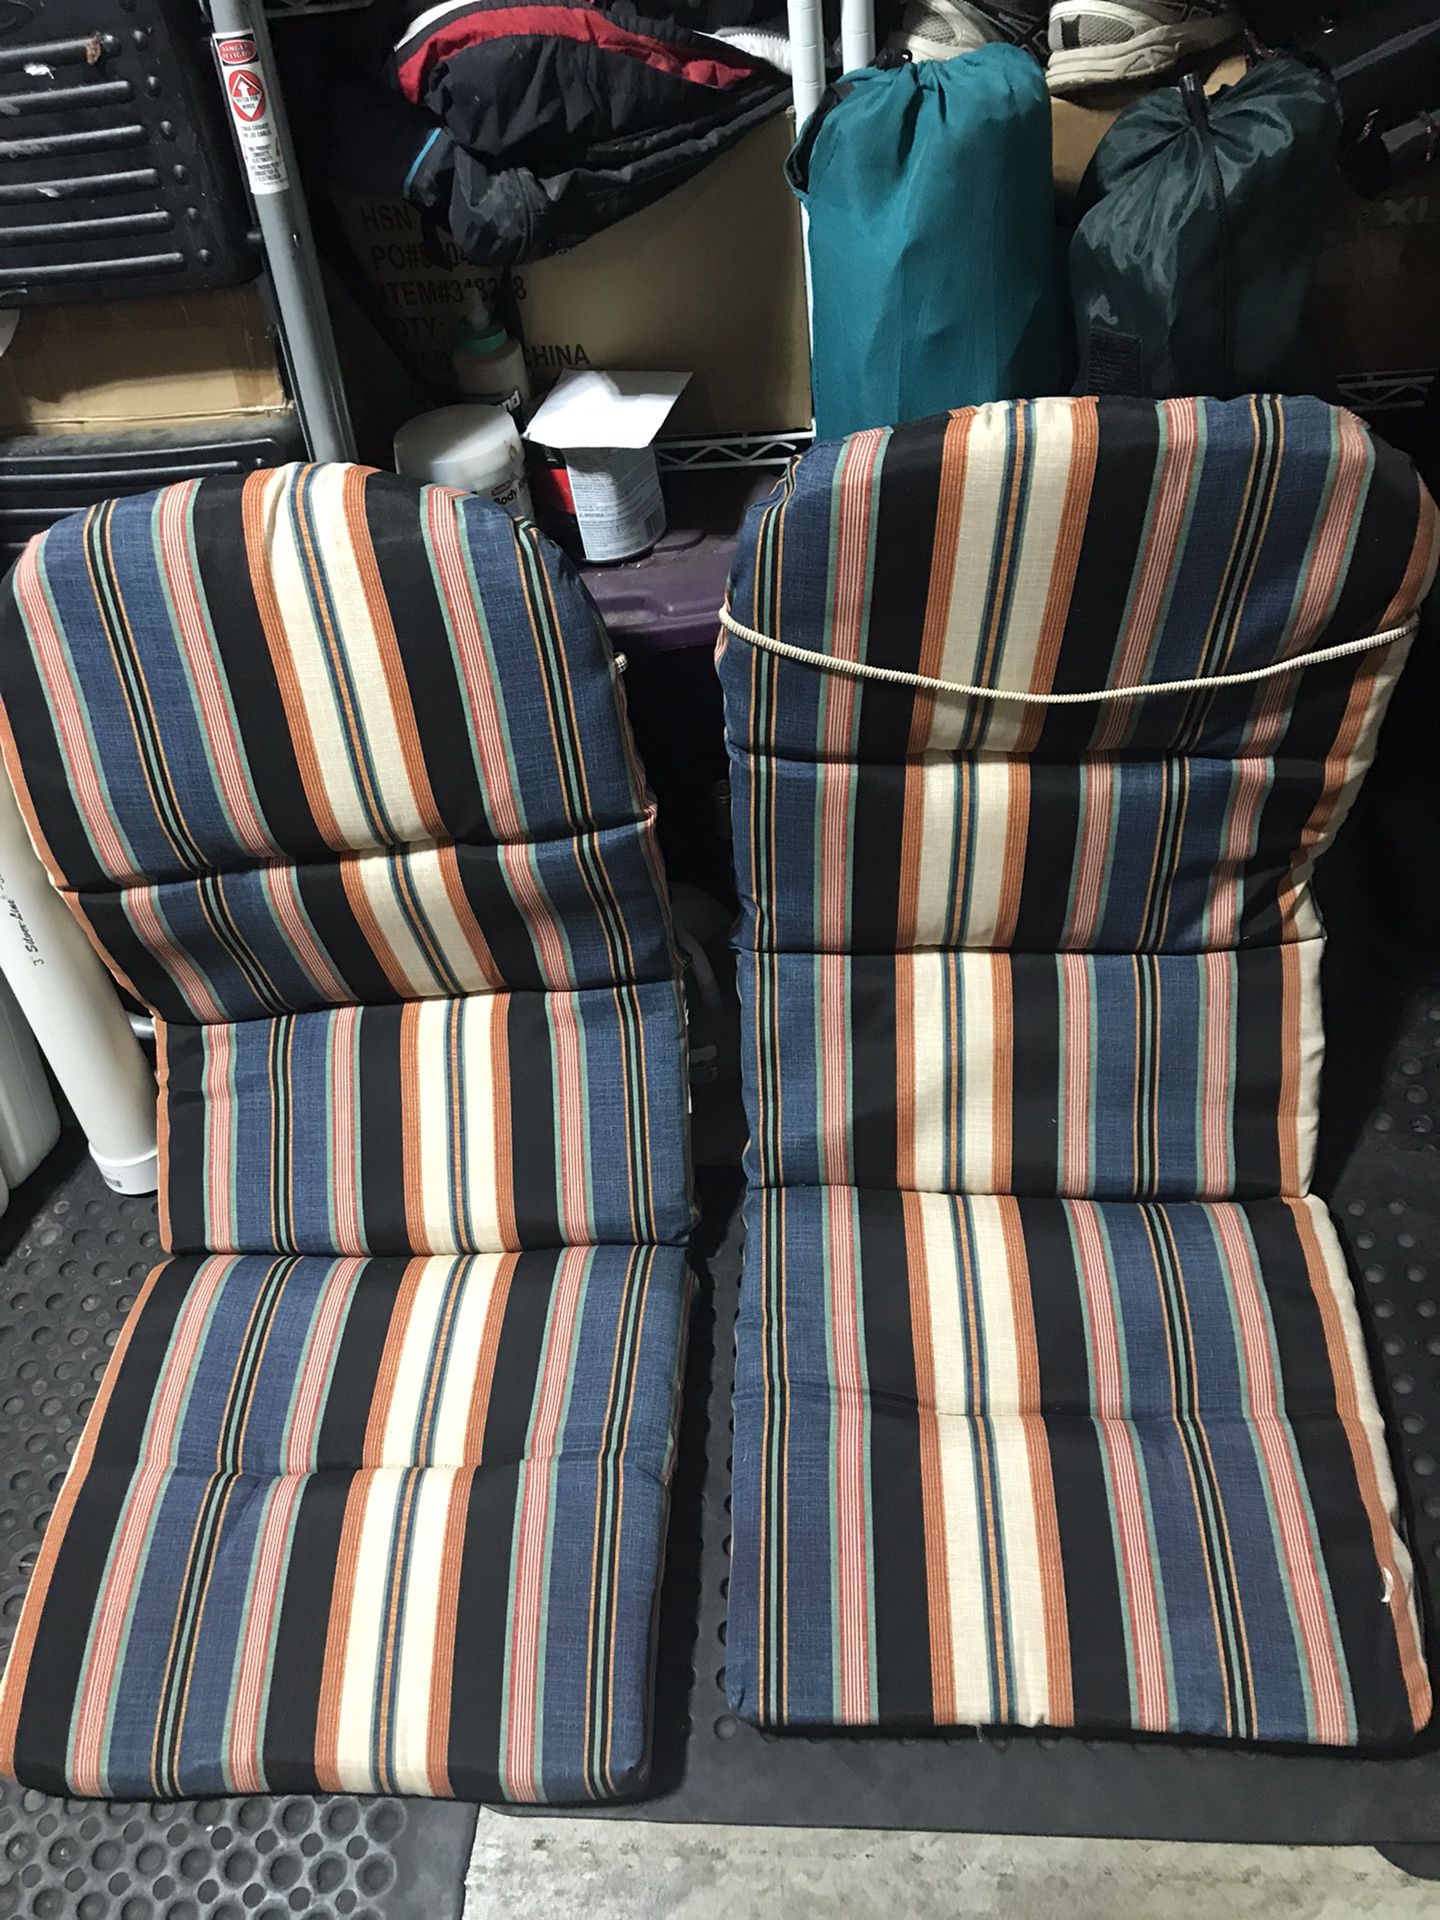 Chair cushions